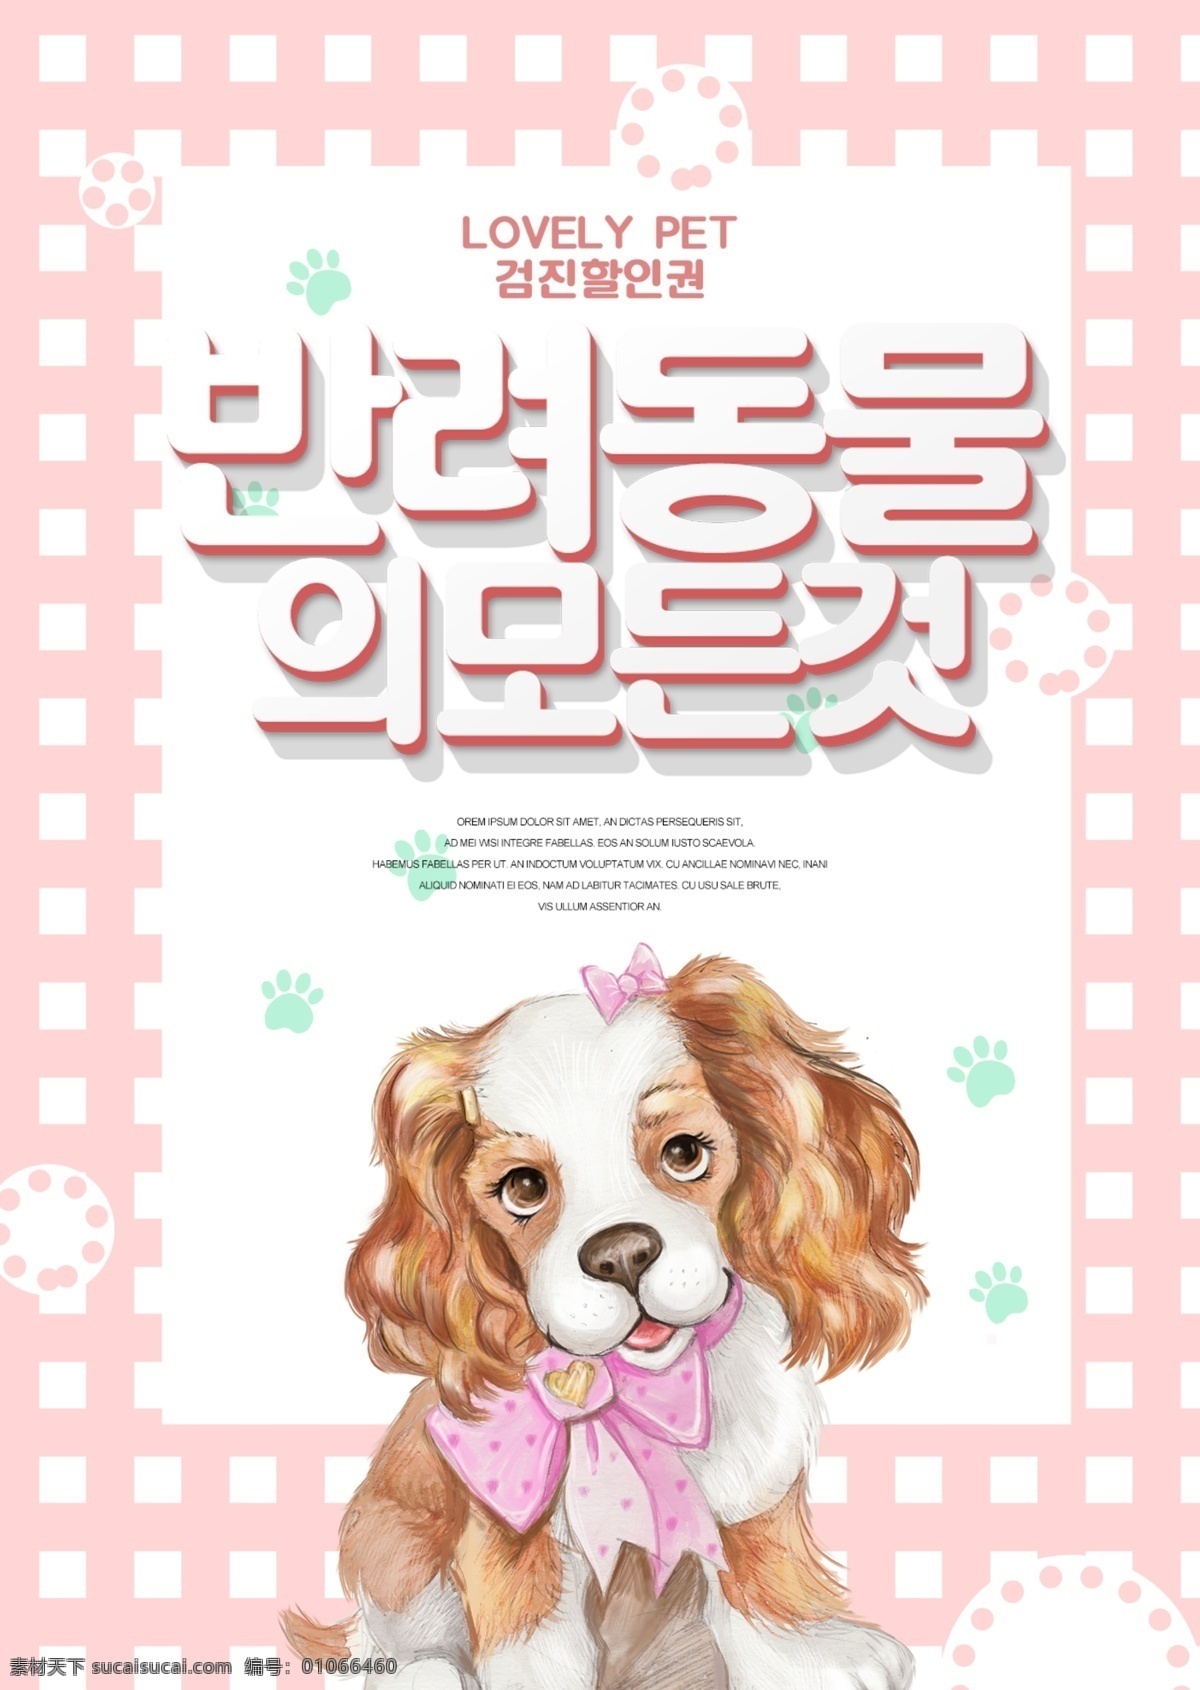 新鲜 可爱 宠物 宣传海报 谈谈关于 装饰 海报 简单 狗 动物 大韩民国 动画片 时尚 现代